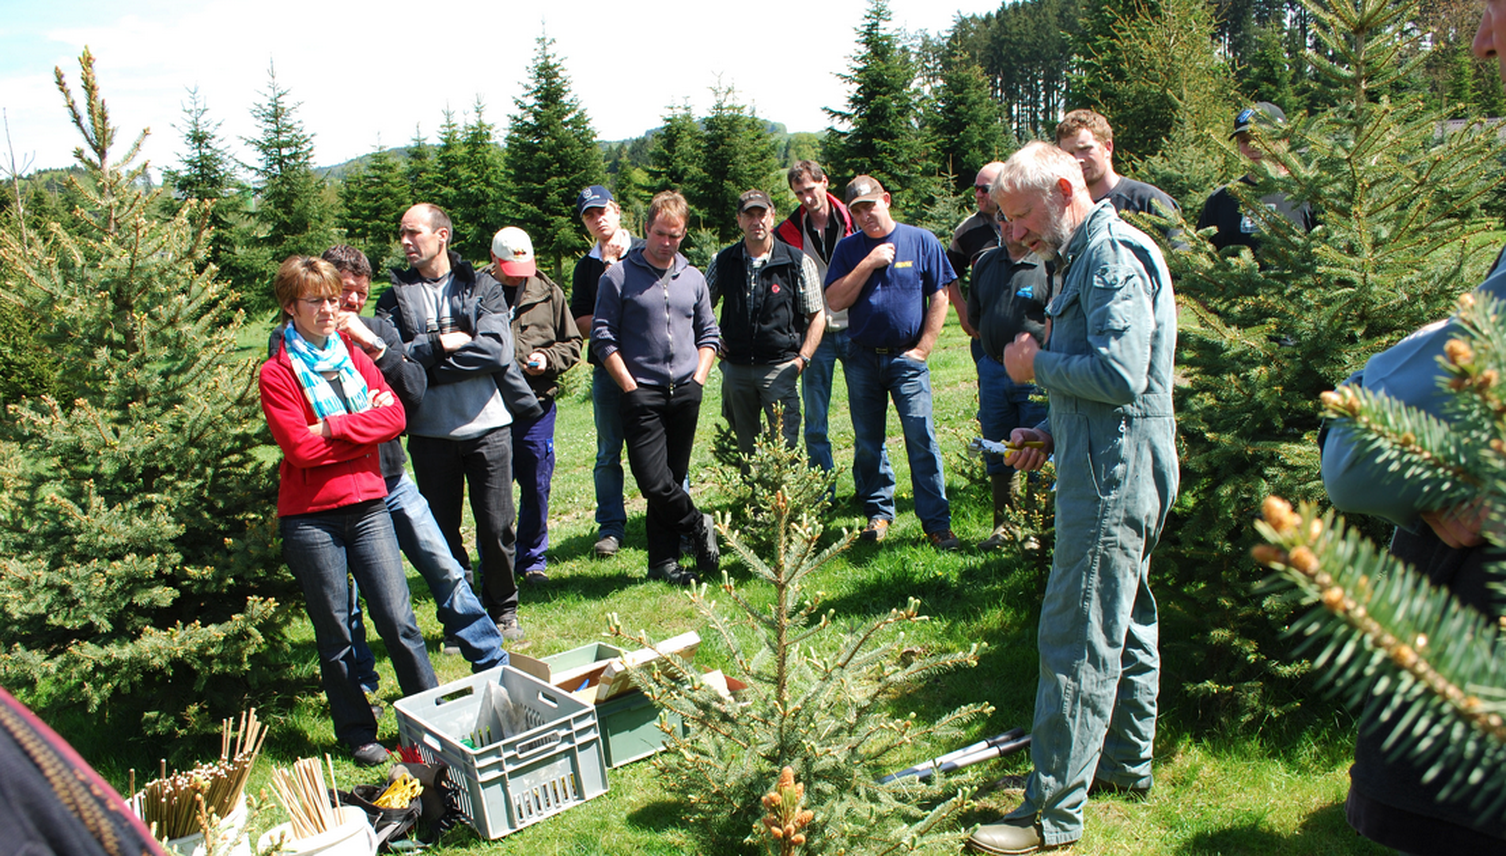 Sommergewitter zerdeppern Christbäume im Kanton Zug